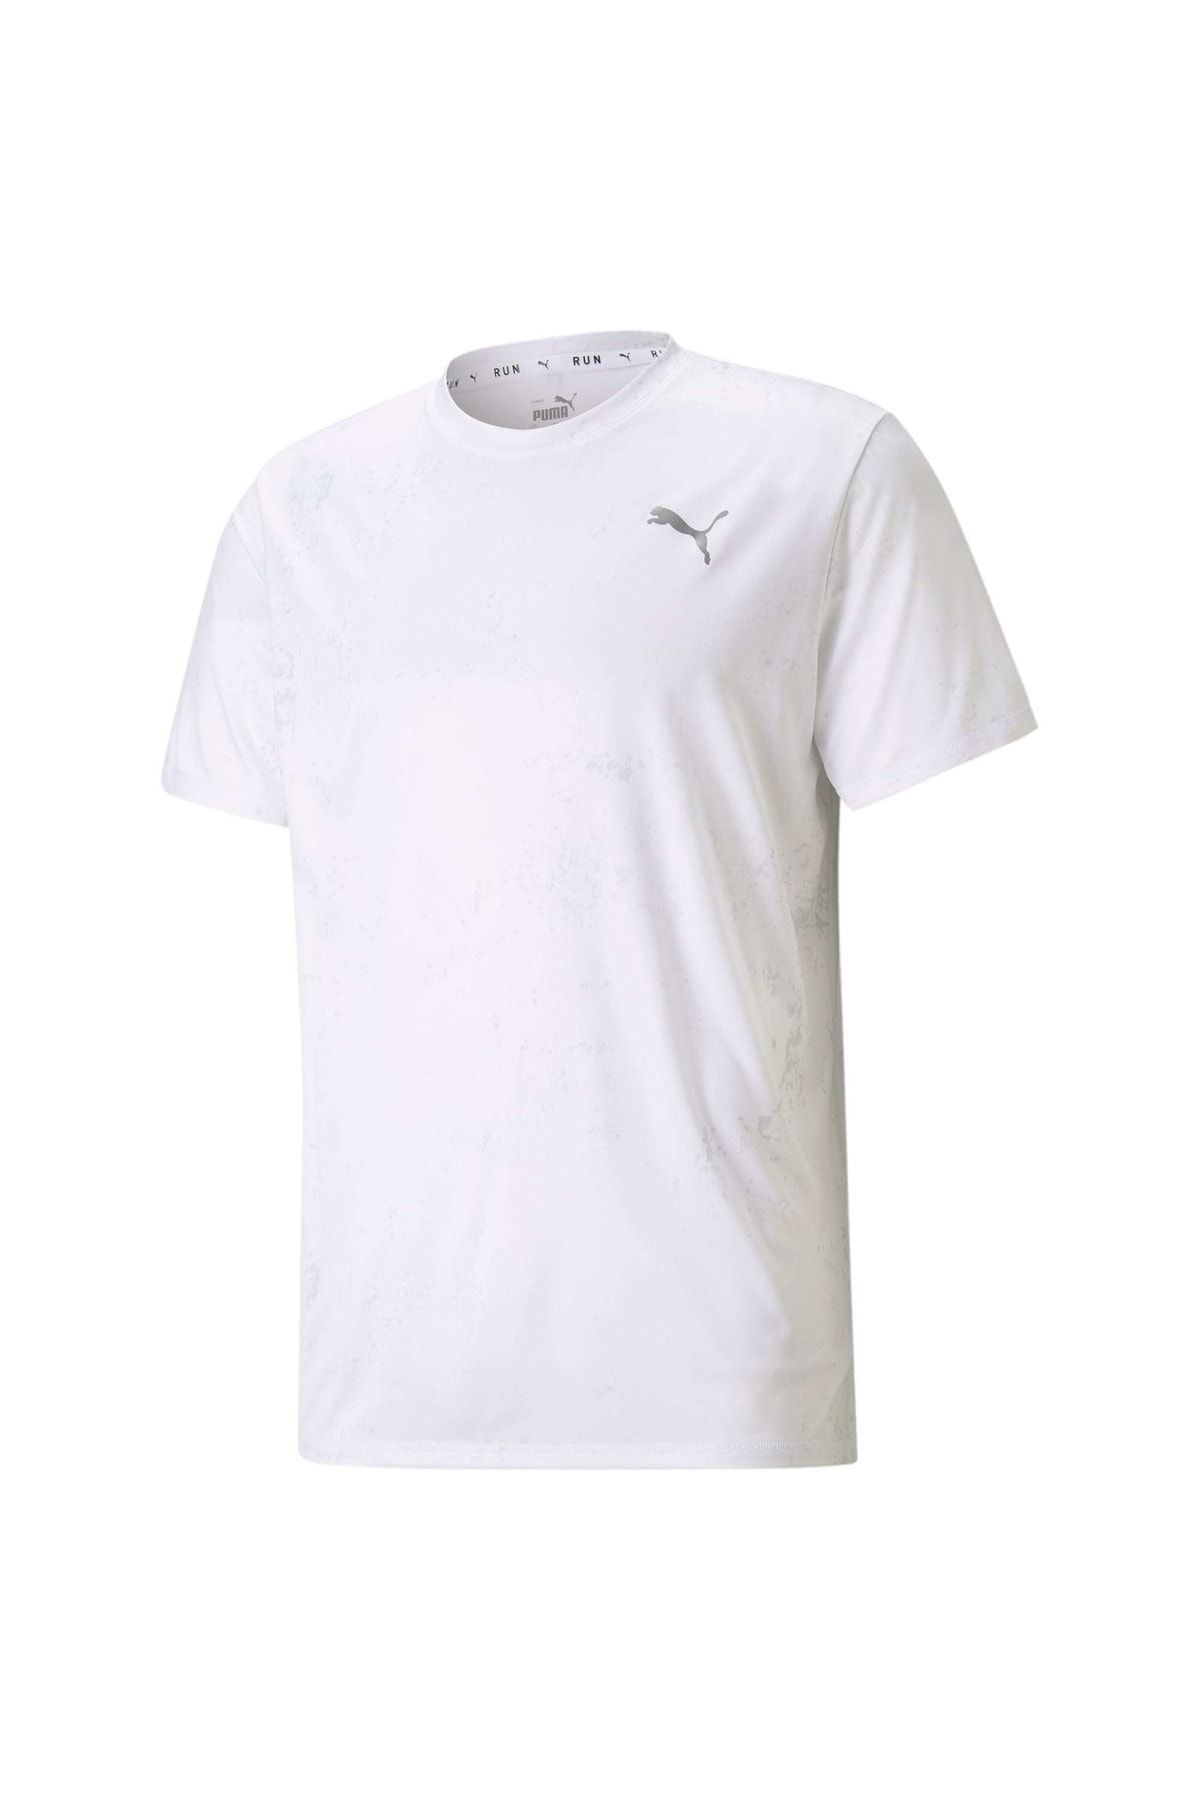 Puma Graphıc Erkek Kısa Kollu Koşu T-shirt